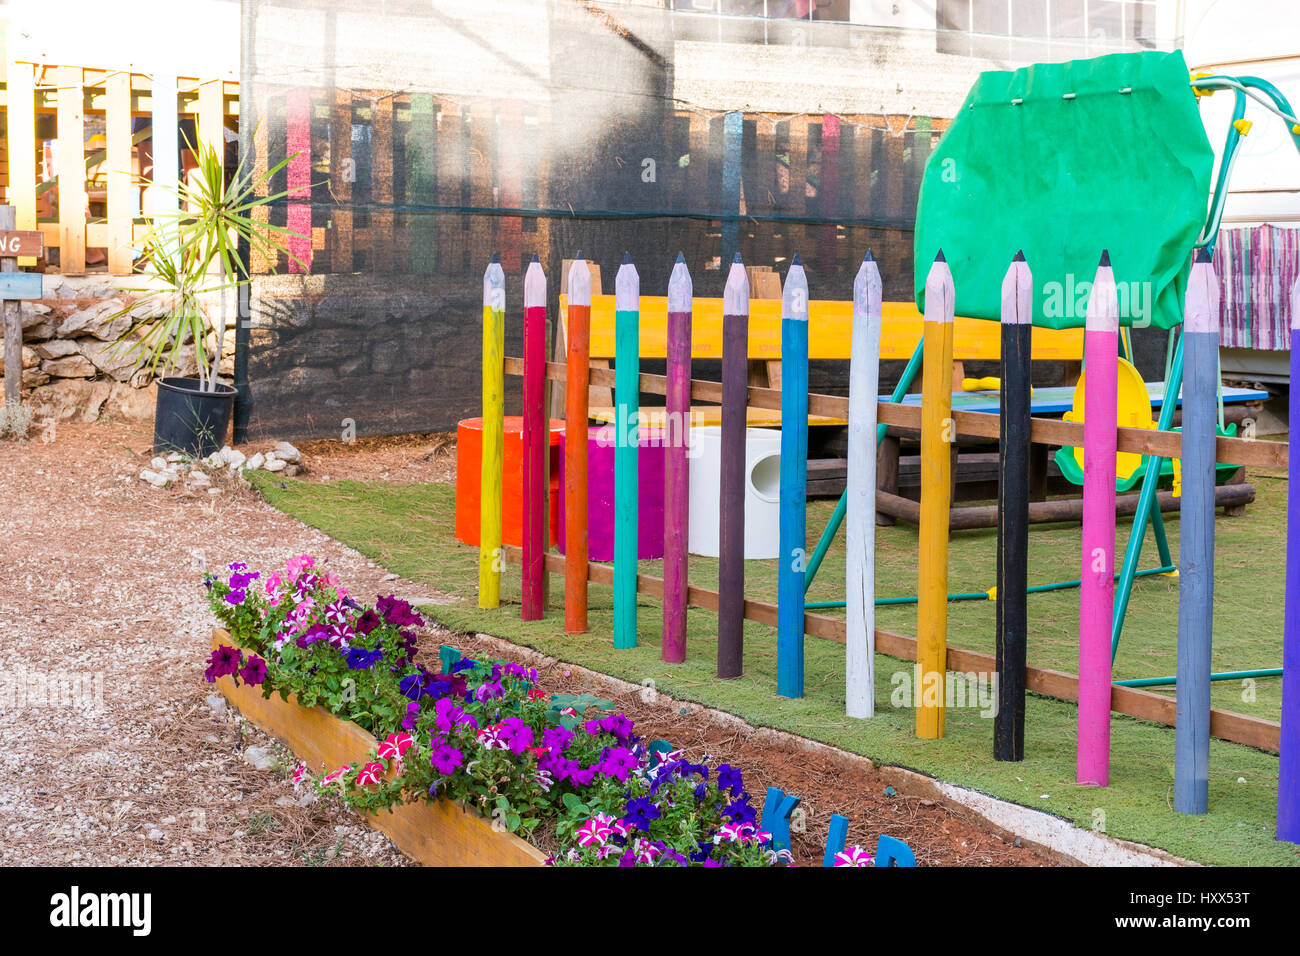 Spielplatz für Kinder. Mit Farbstiften, Zaun. Im Garten. Alles aus  recycelten und umweltfreundlichen Materialien Stockfotografie - Alamy